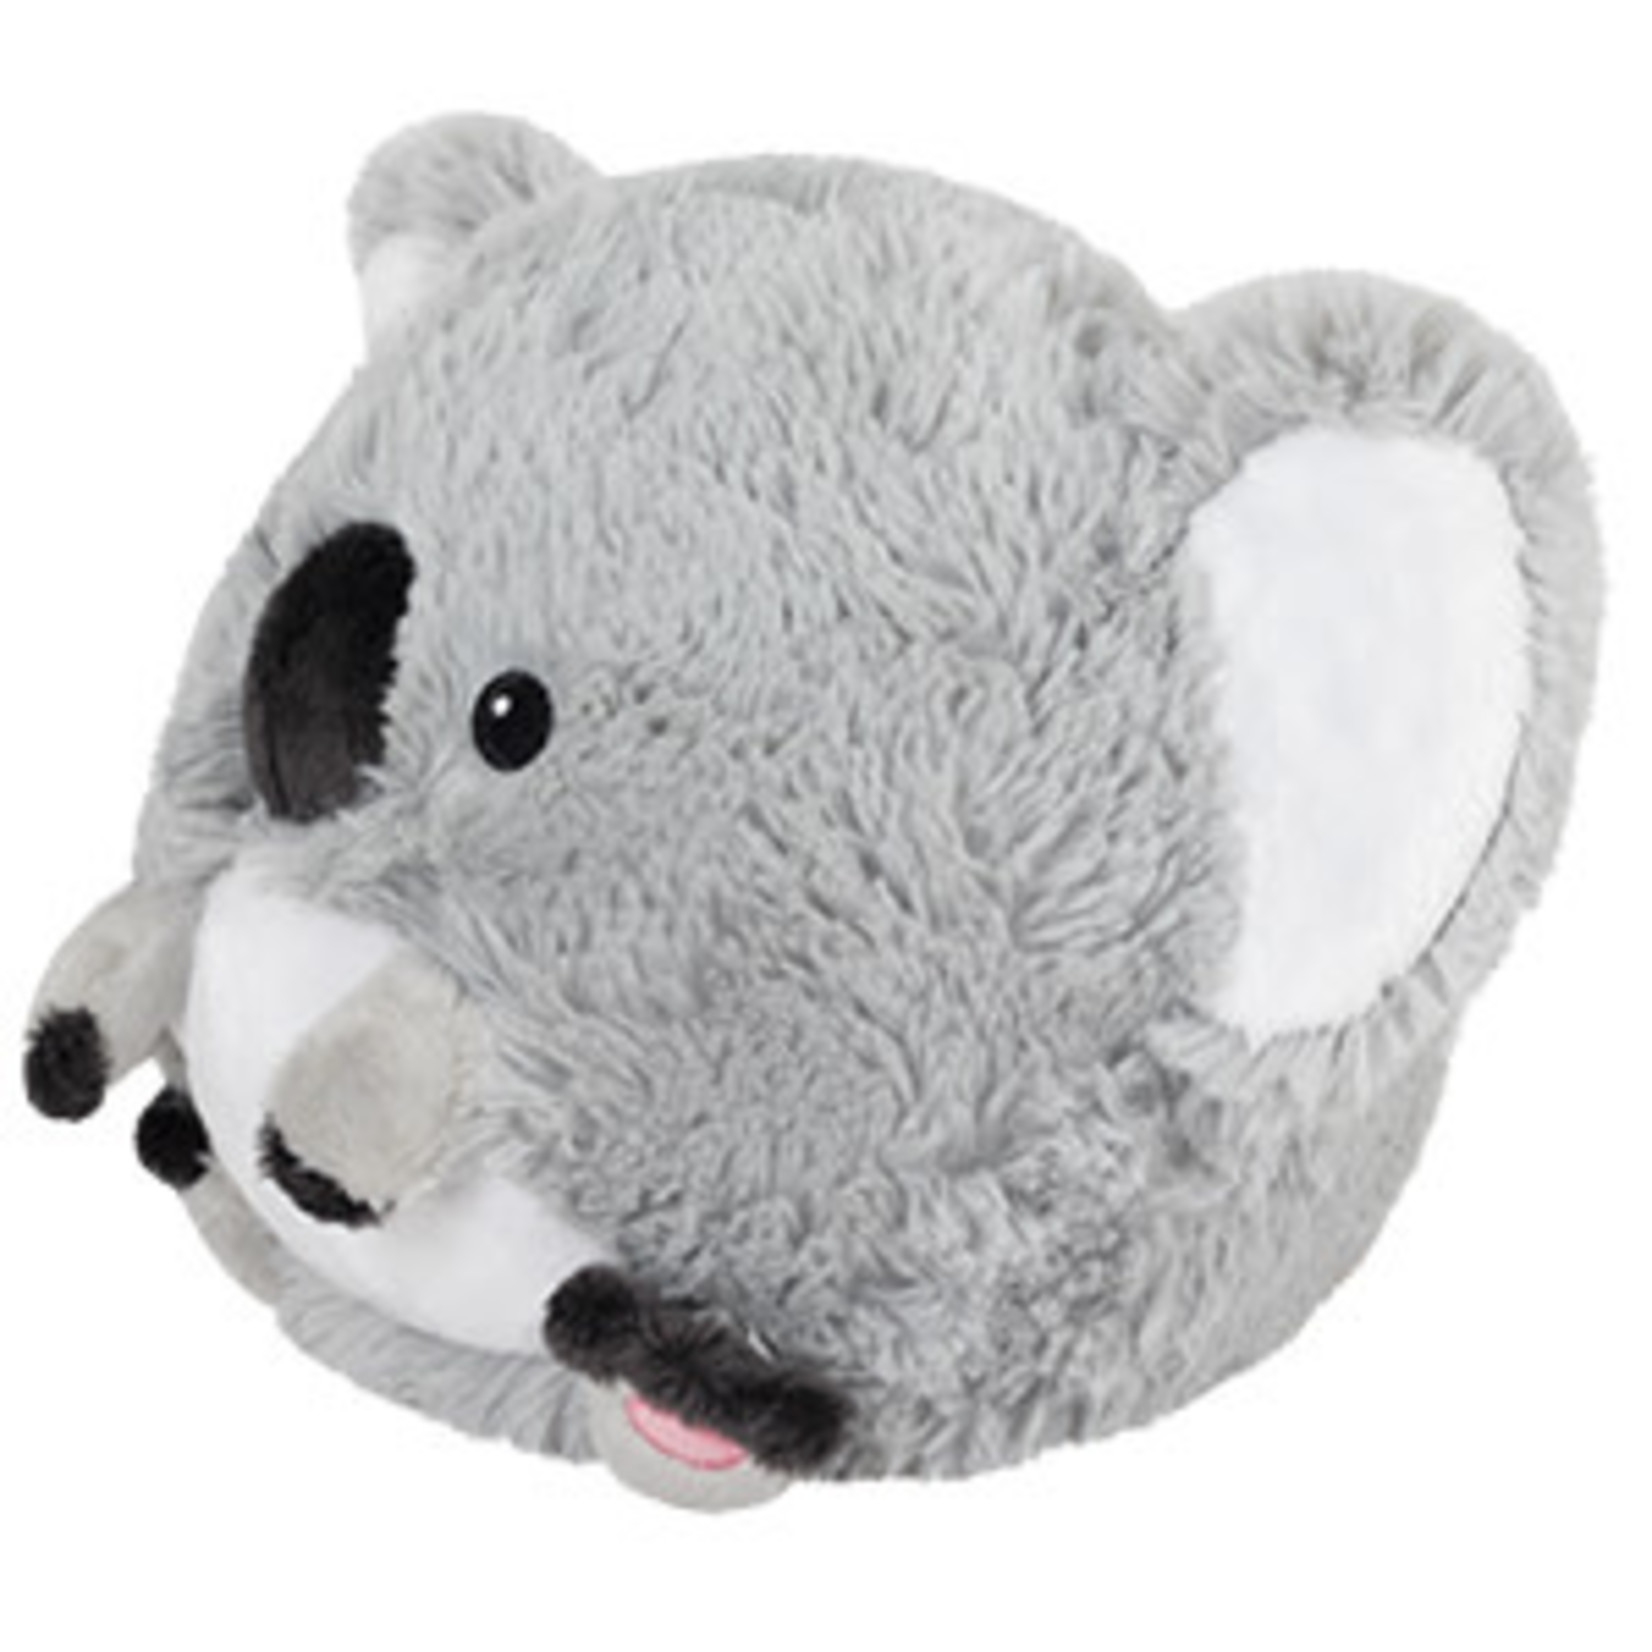 Squishable Mini: Baby Koala